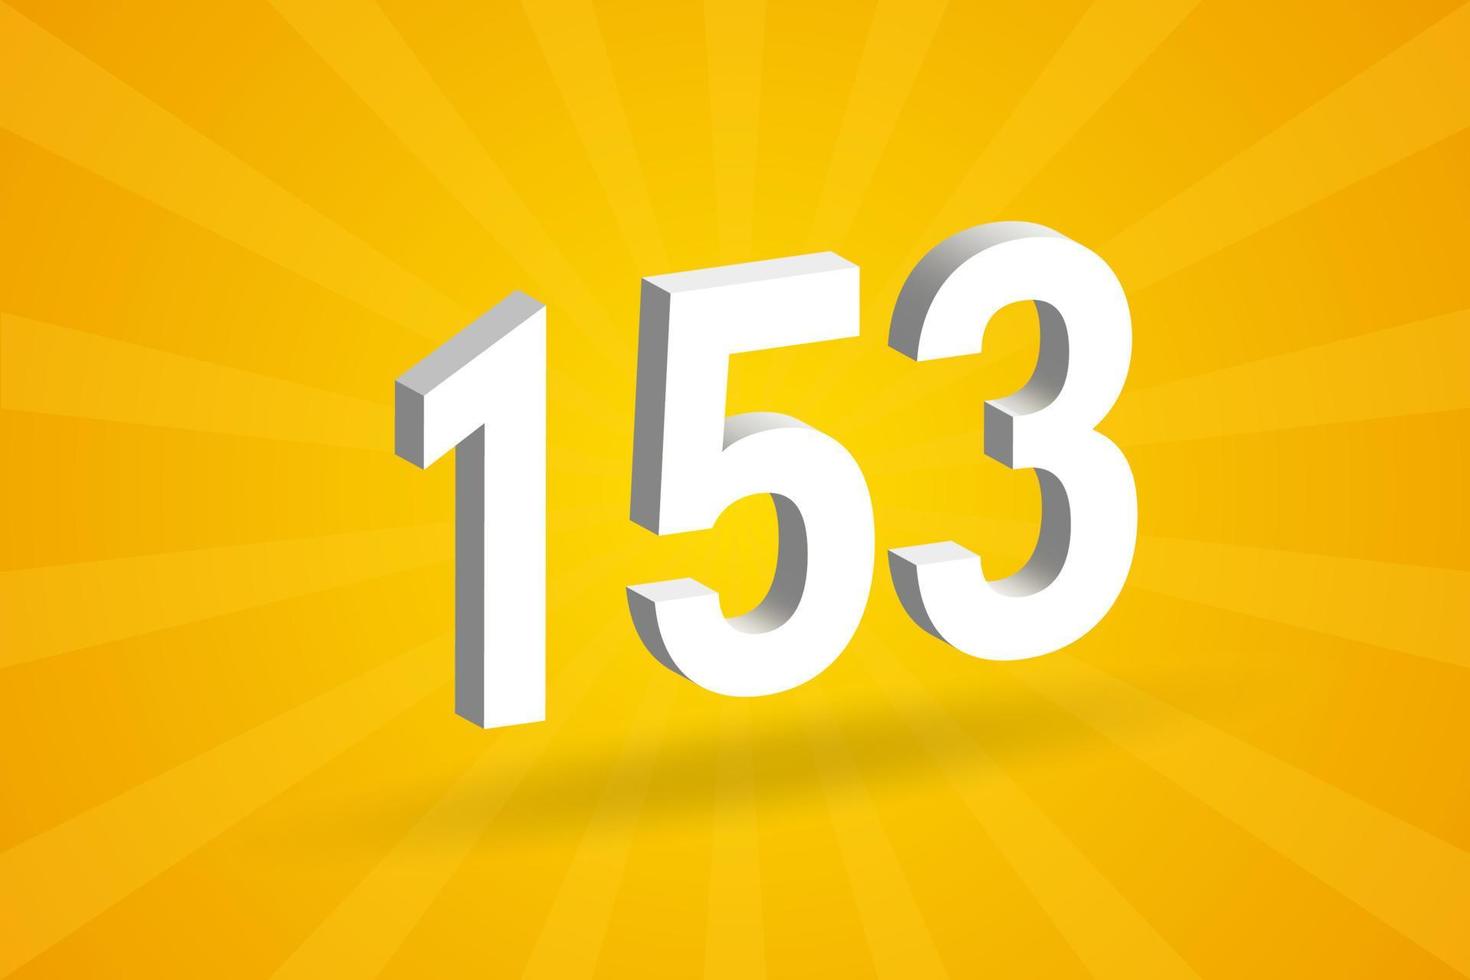 3d 153 numero font alfabeto. bianca 3d numero 153 con giallo sfondo vettore